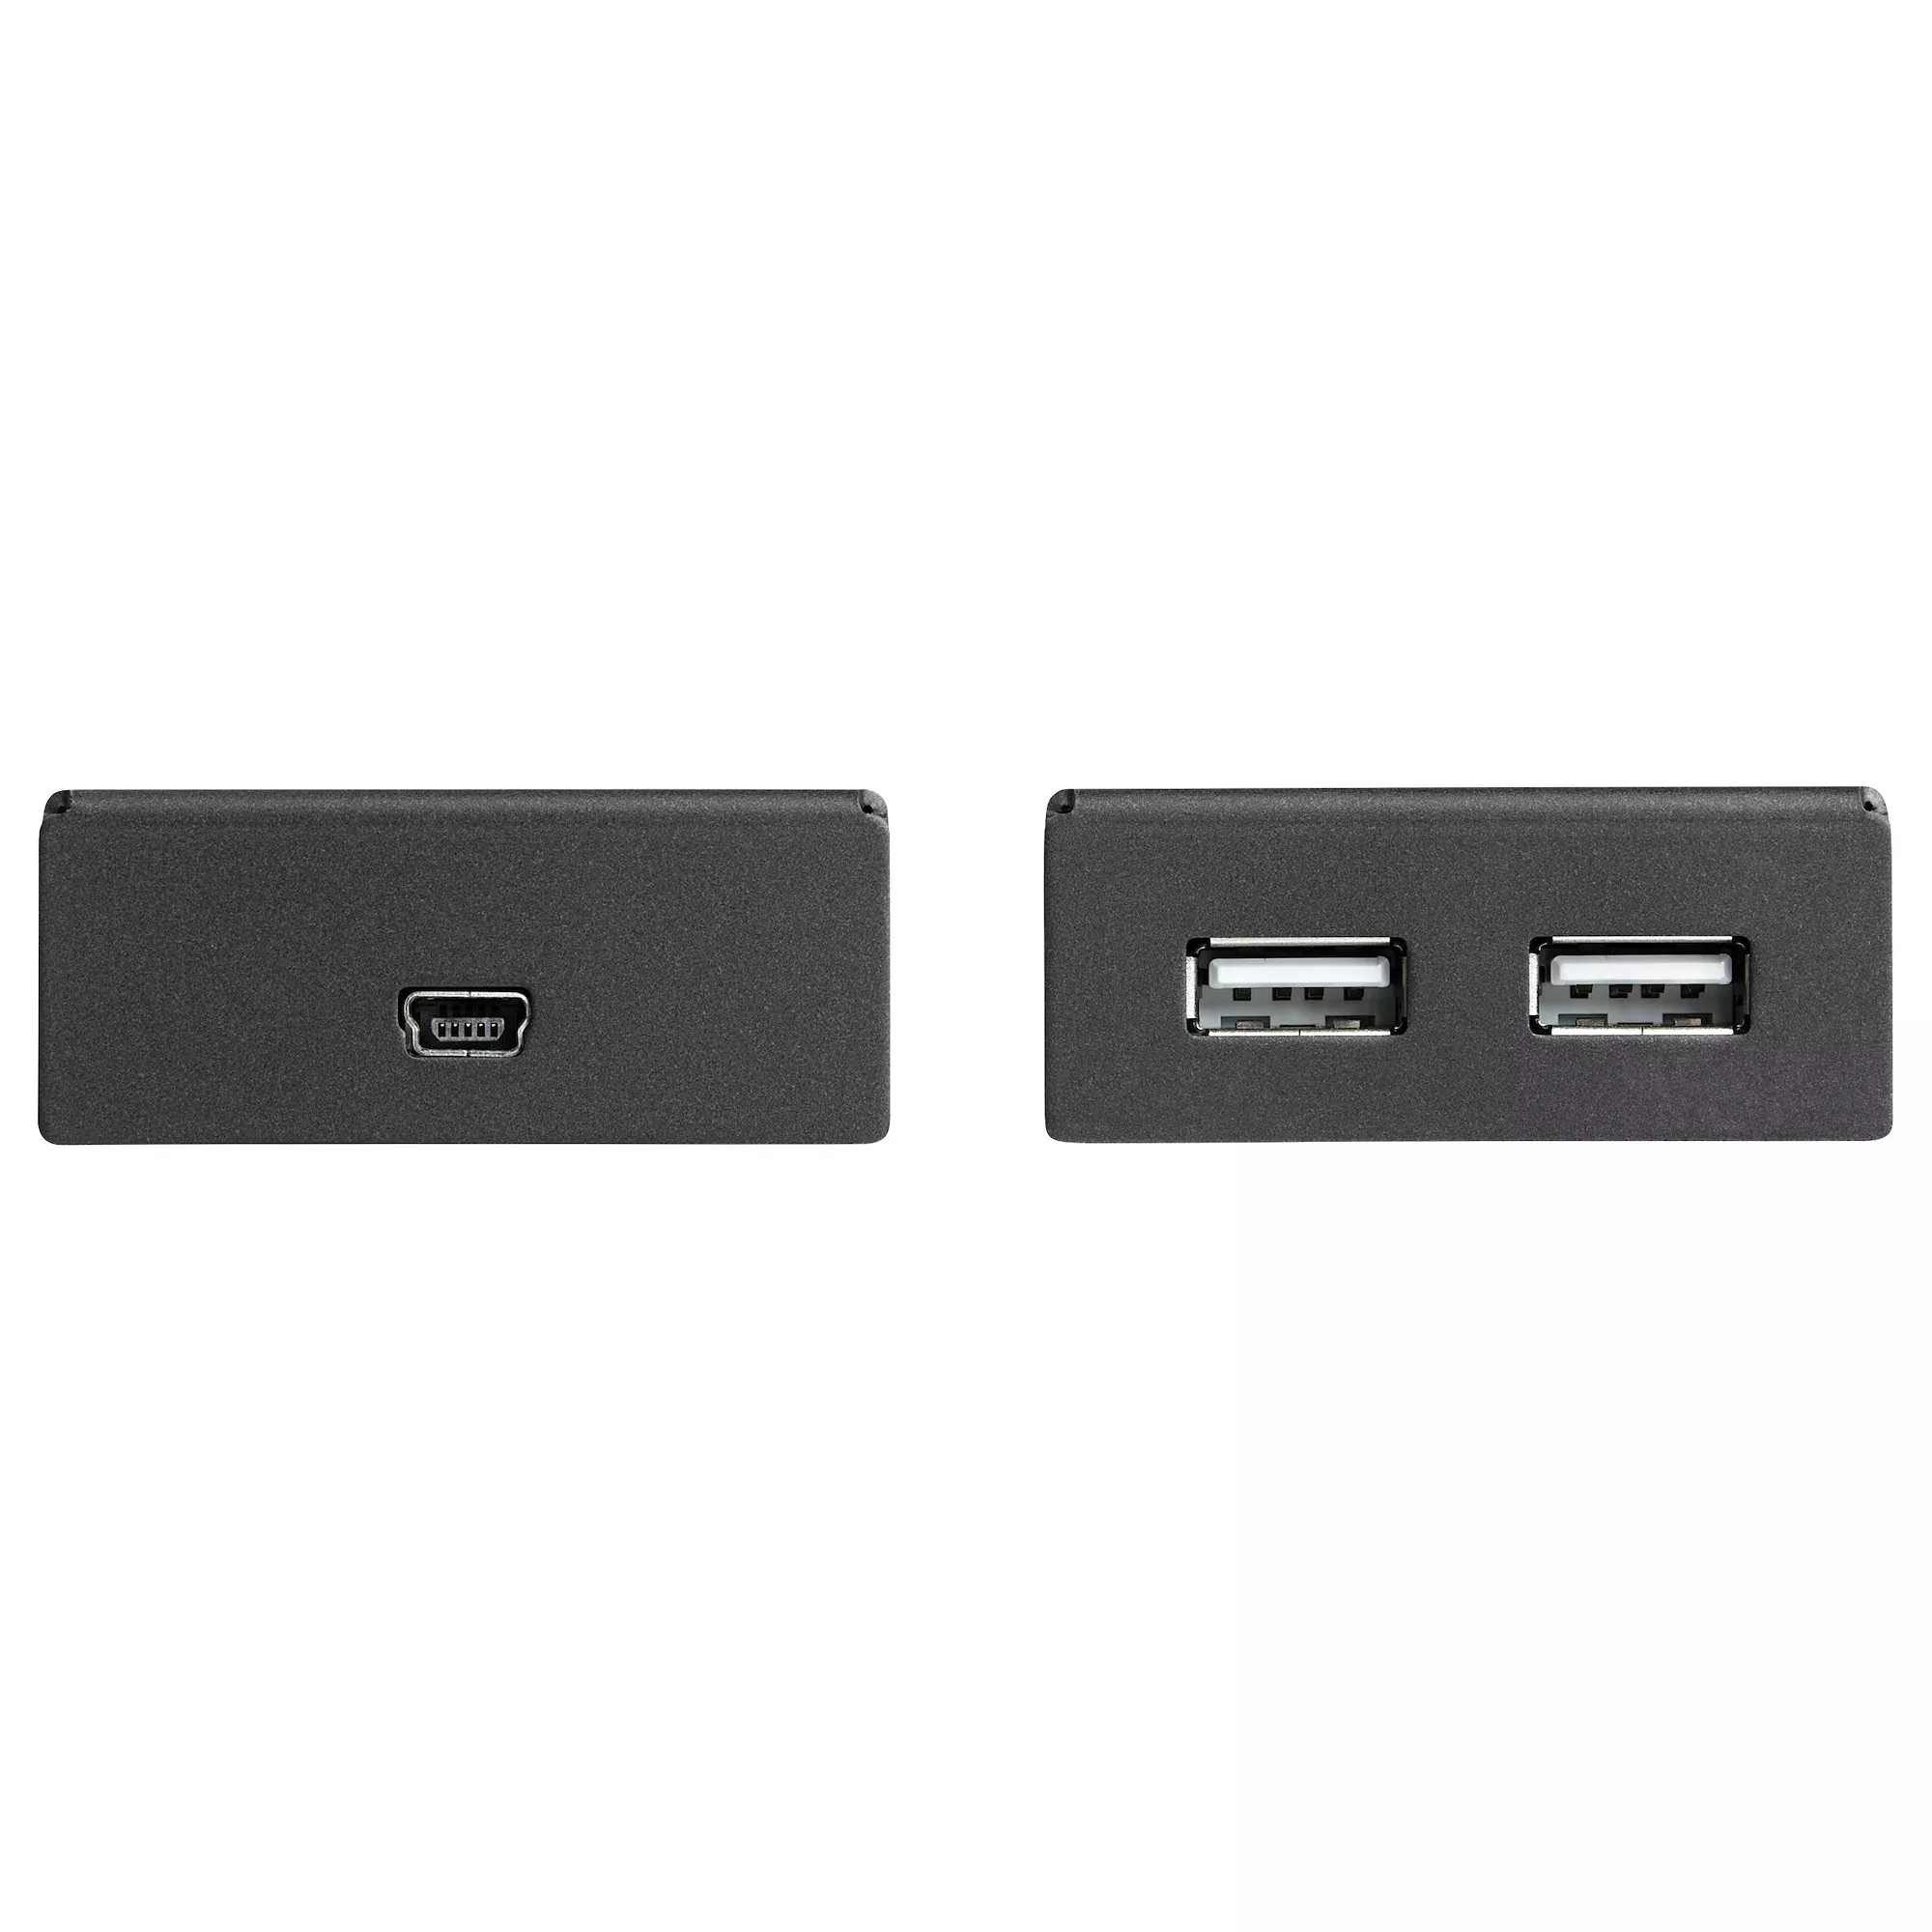 Achat StarTech.com Prolongateur USB 2.0 4 Ports - Extendeur sur hello RSE - visuel 9